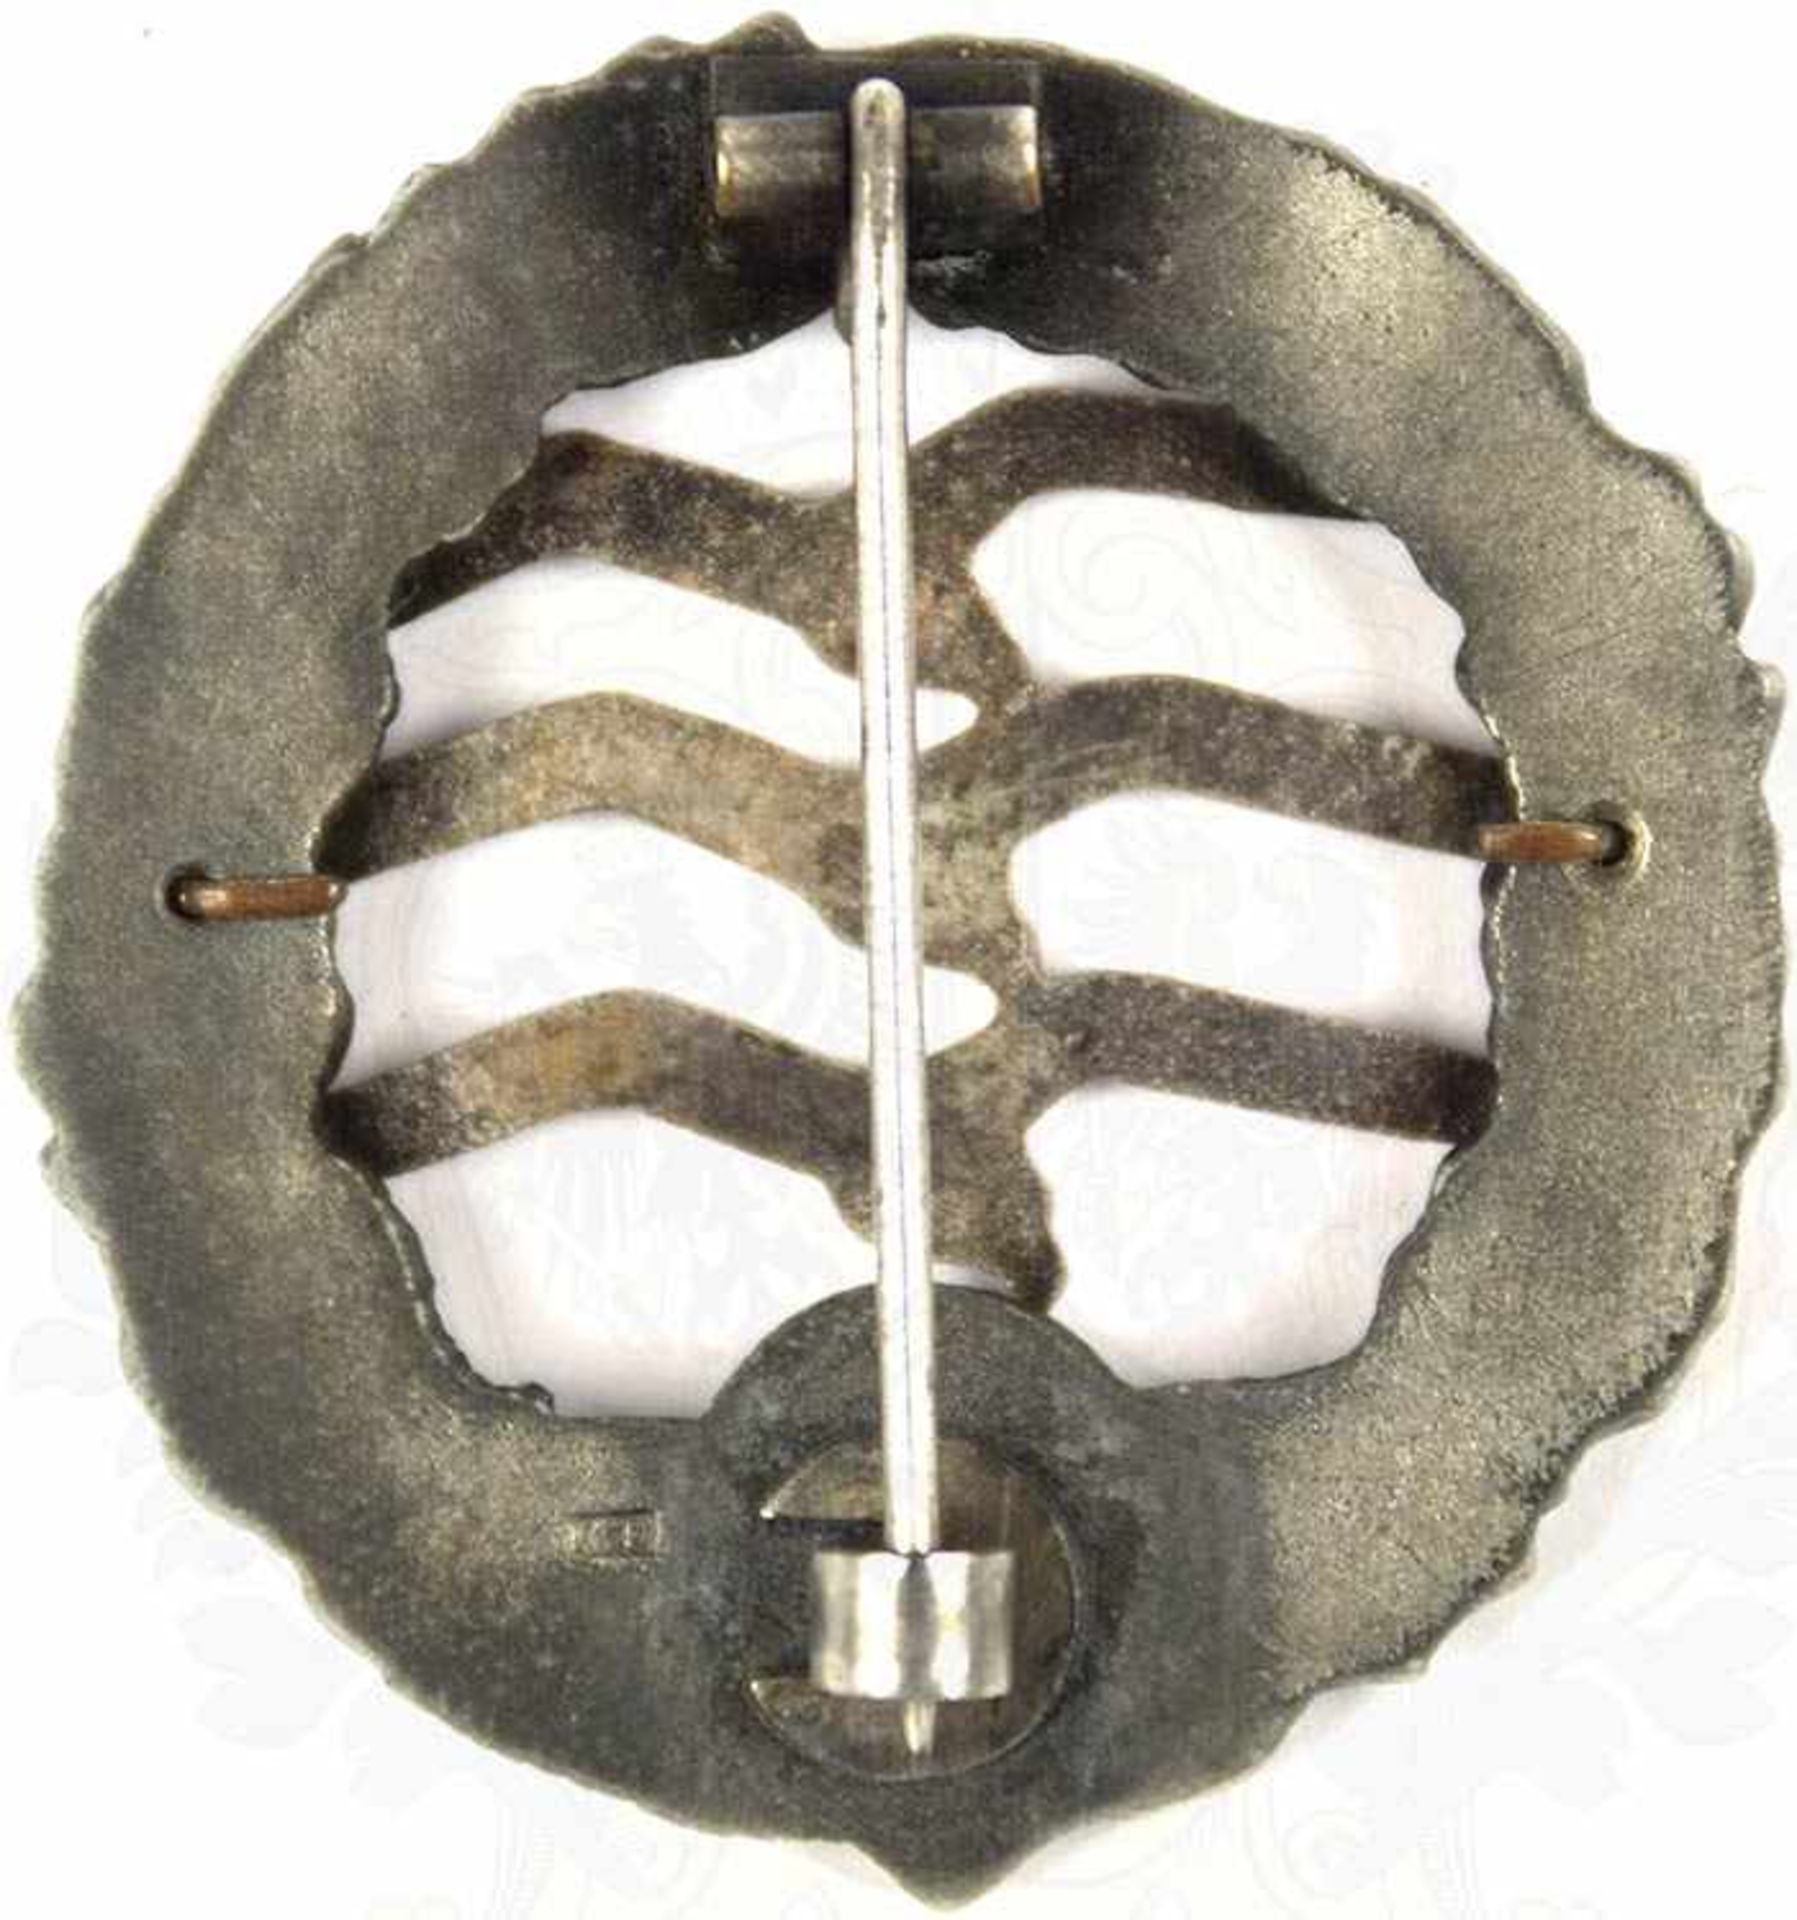 GROßES NSFK-SEGELFLIEGERABZEICHEN, Weißmetall/teilemaill., kl. Chips, runde magnet. Nadel, Fertigung - Image 2 of 2